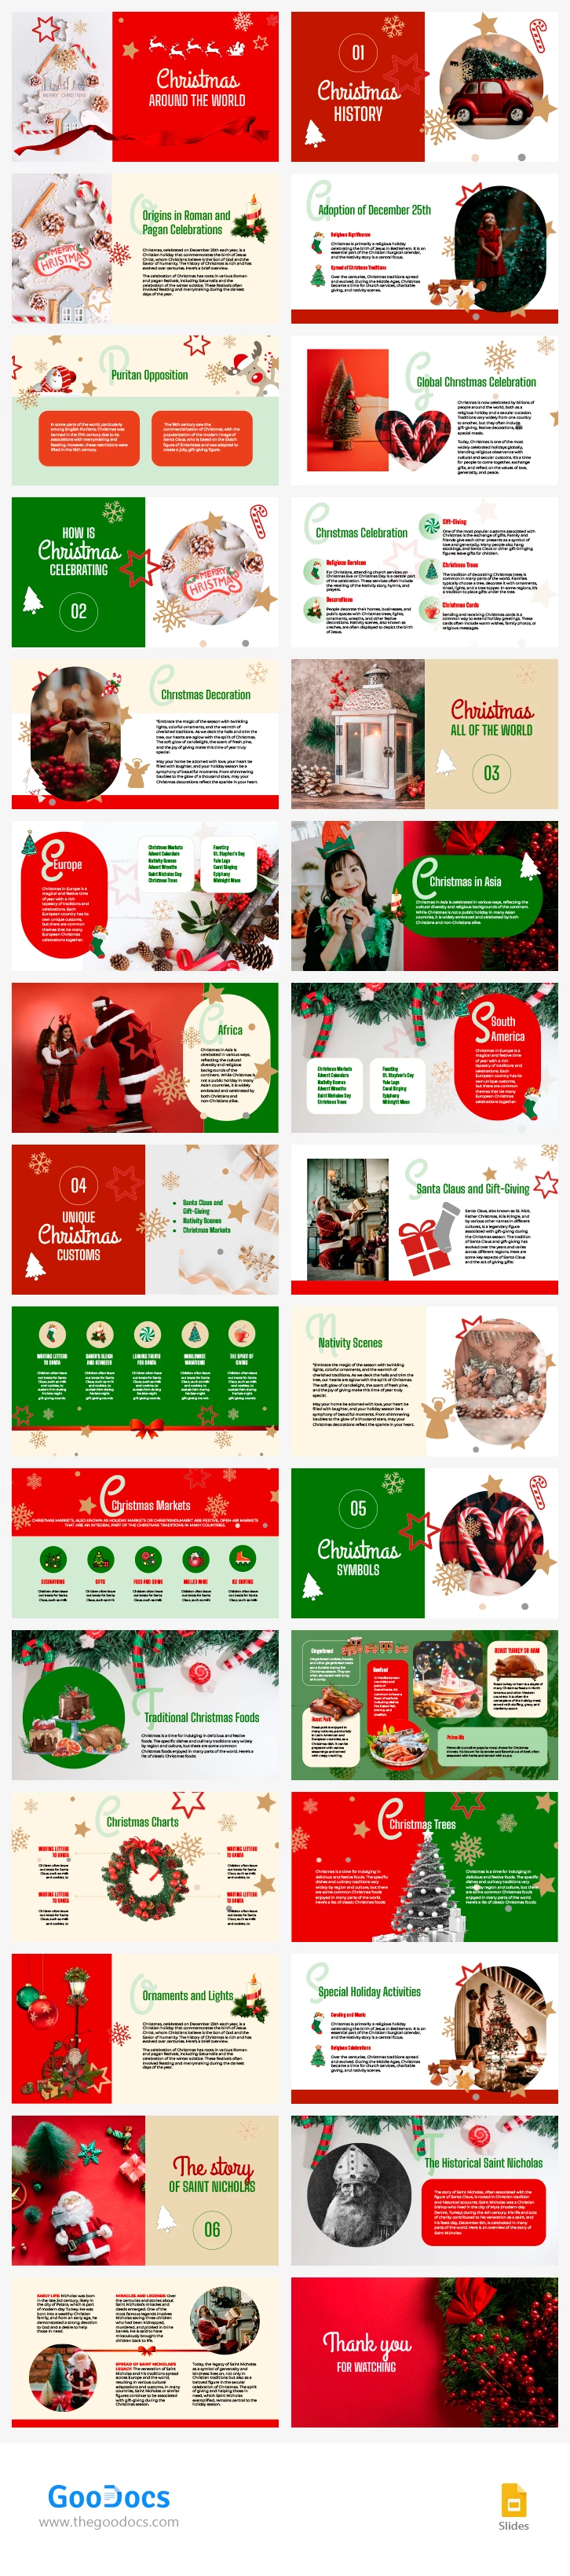 Navidad alrededor del mundo - free Google Docs Template - 10067303